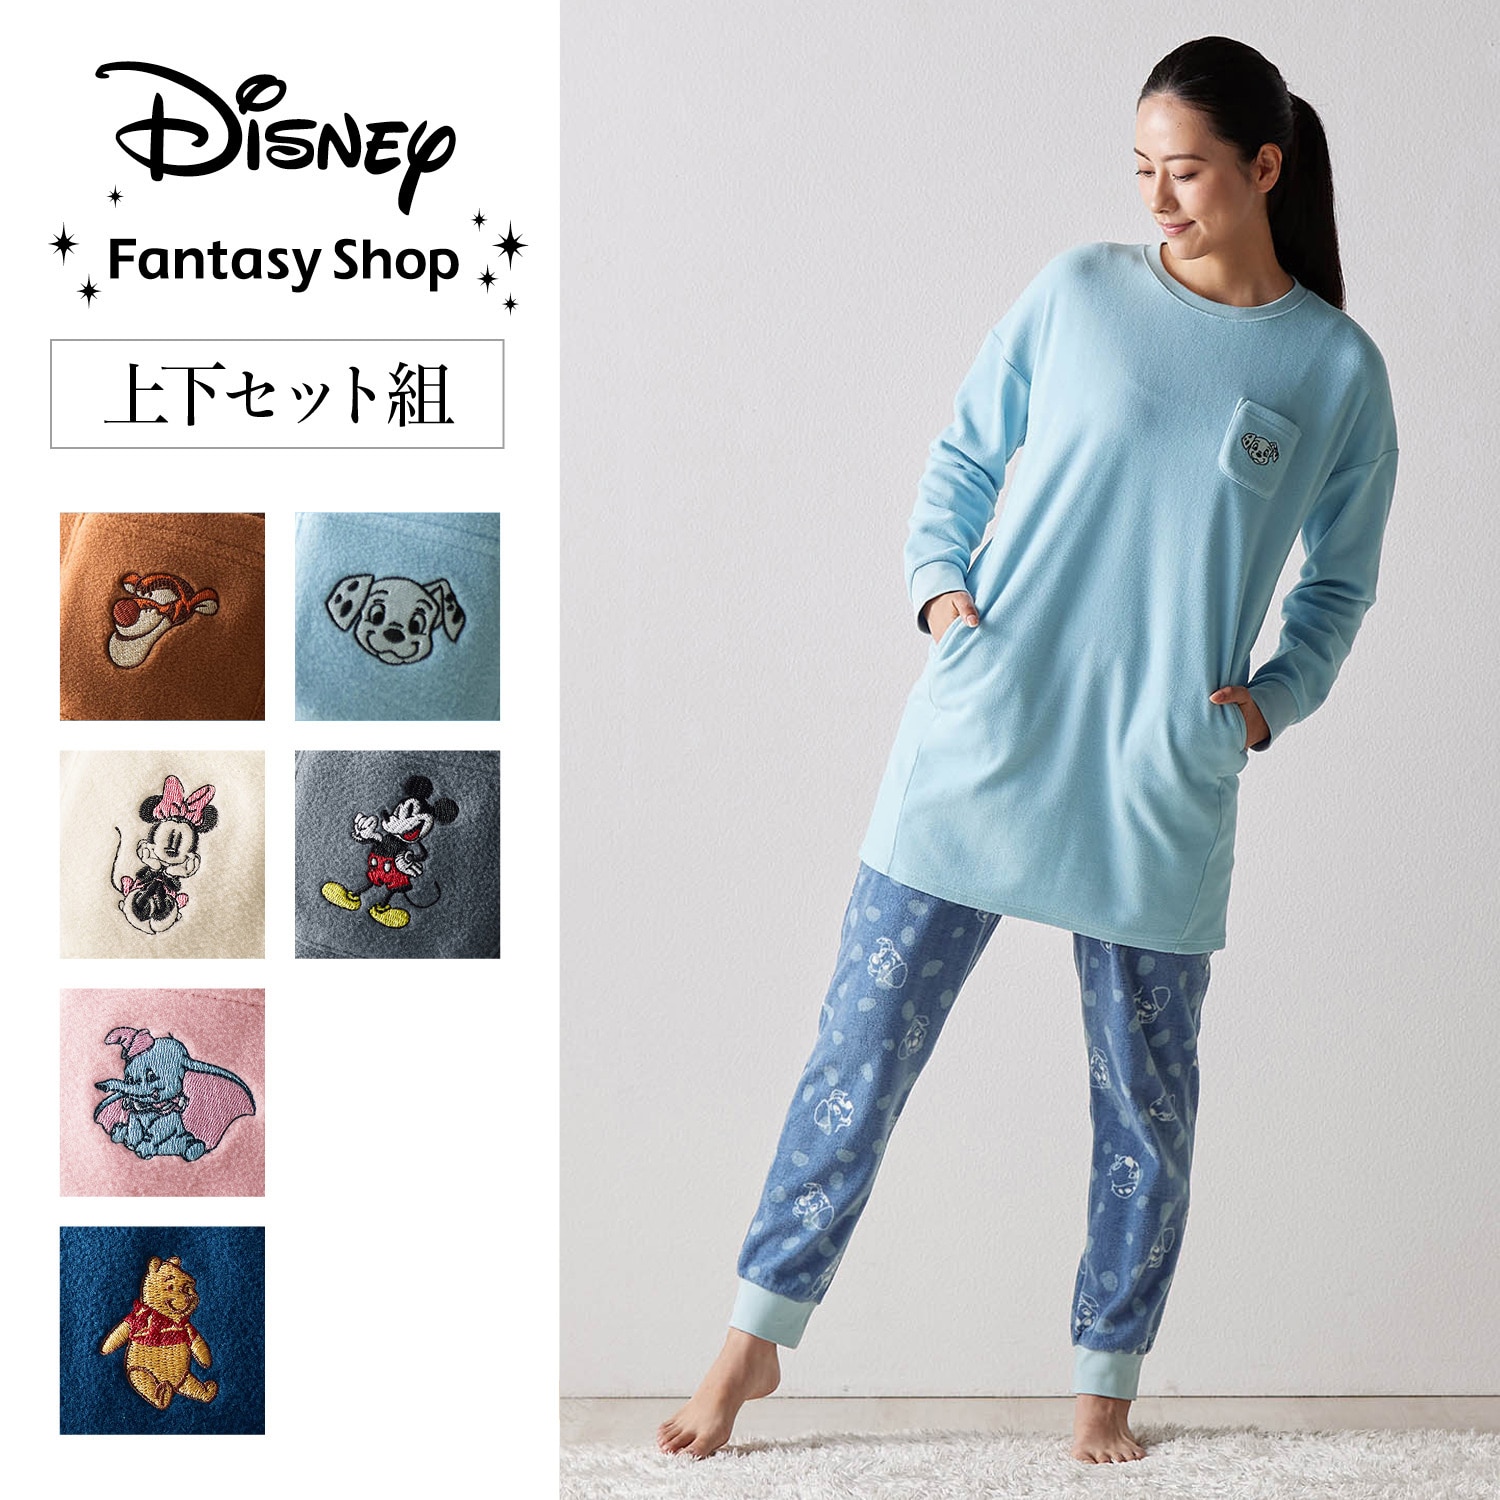 【ディズニー/Disney】【新柄登場】 レディース肌側綿フリースチュニックパジャマ(選べるキャラクター)画像